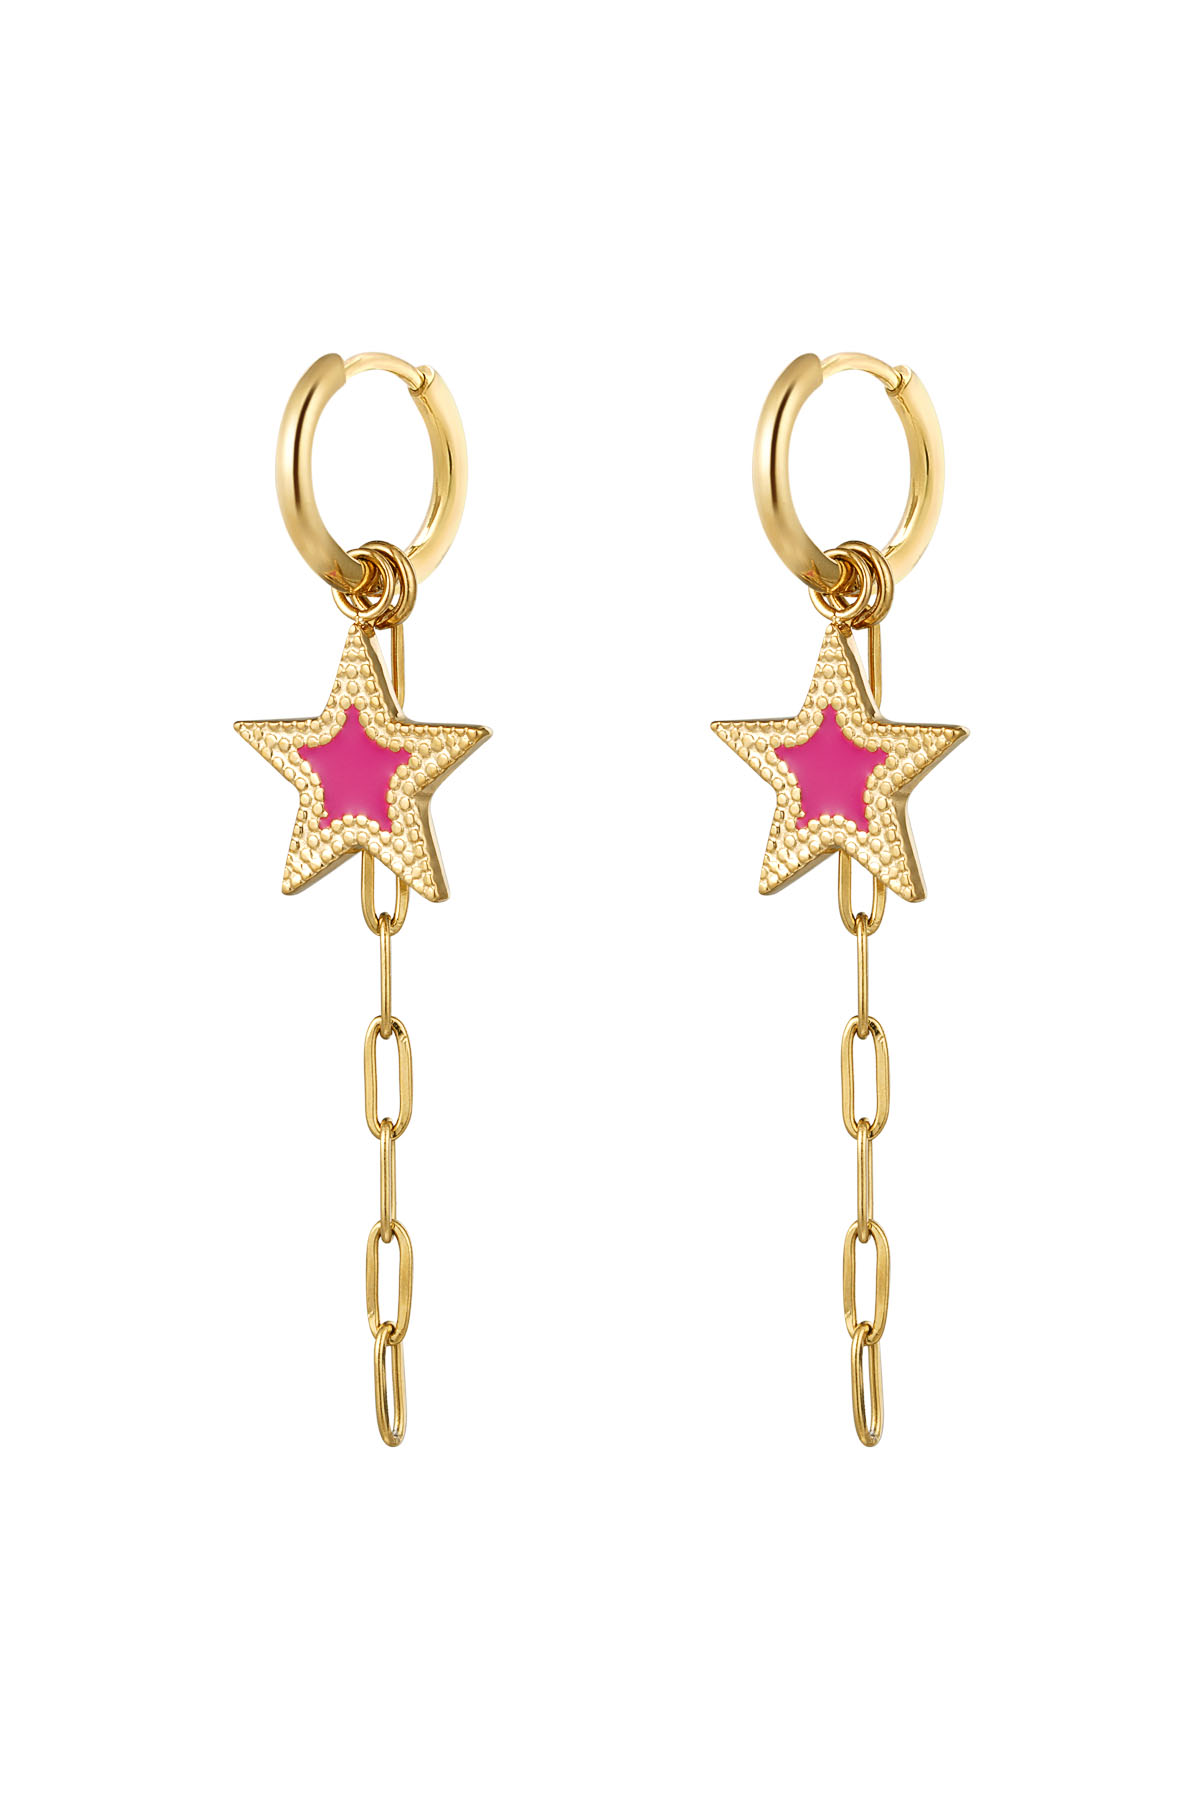 pendientes con estrella y collar rosa - oro